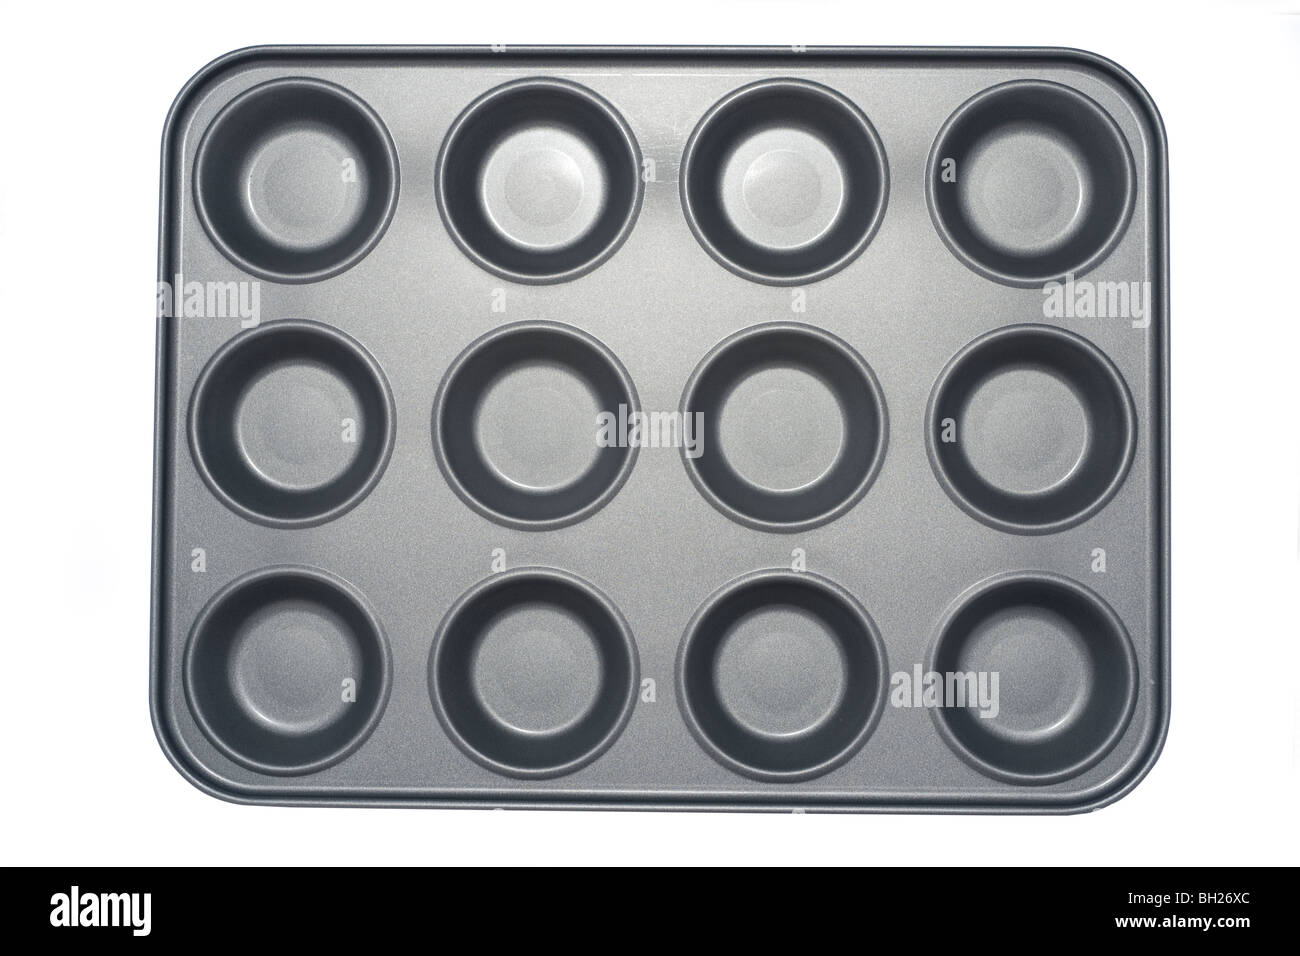 Douze des sections de métal gris recouvert de téflon bac muffin Banque D'Images